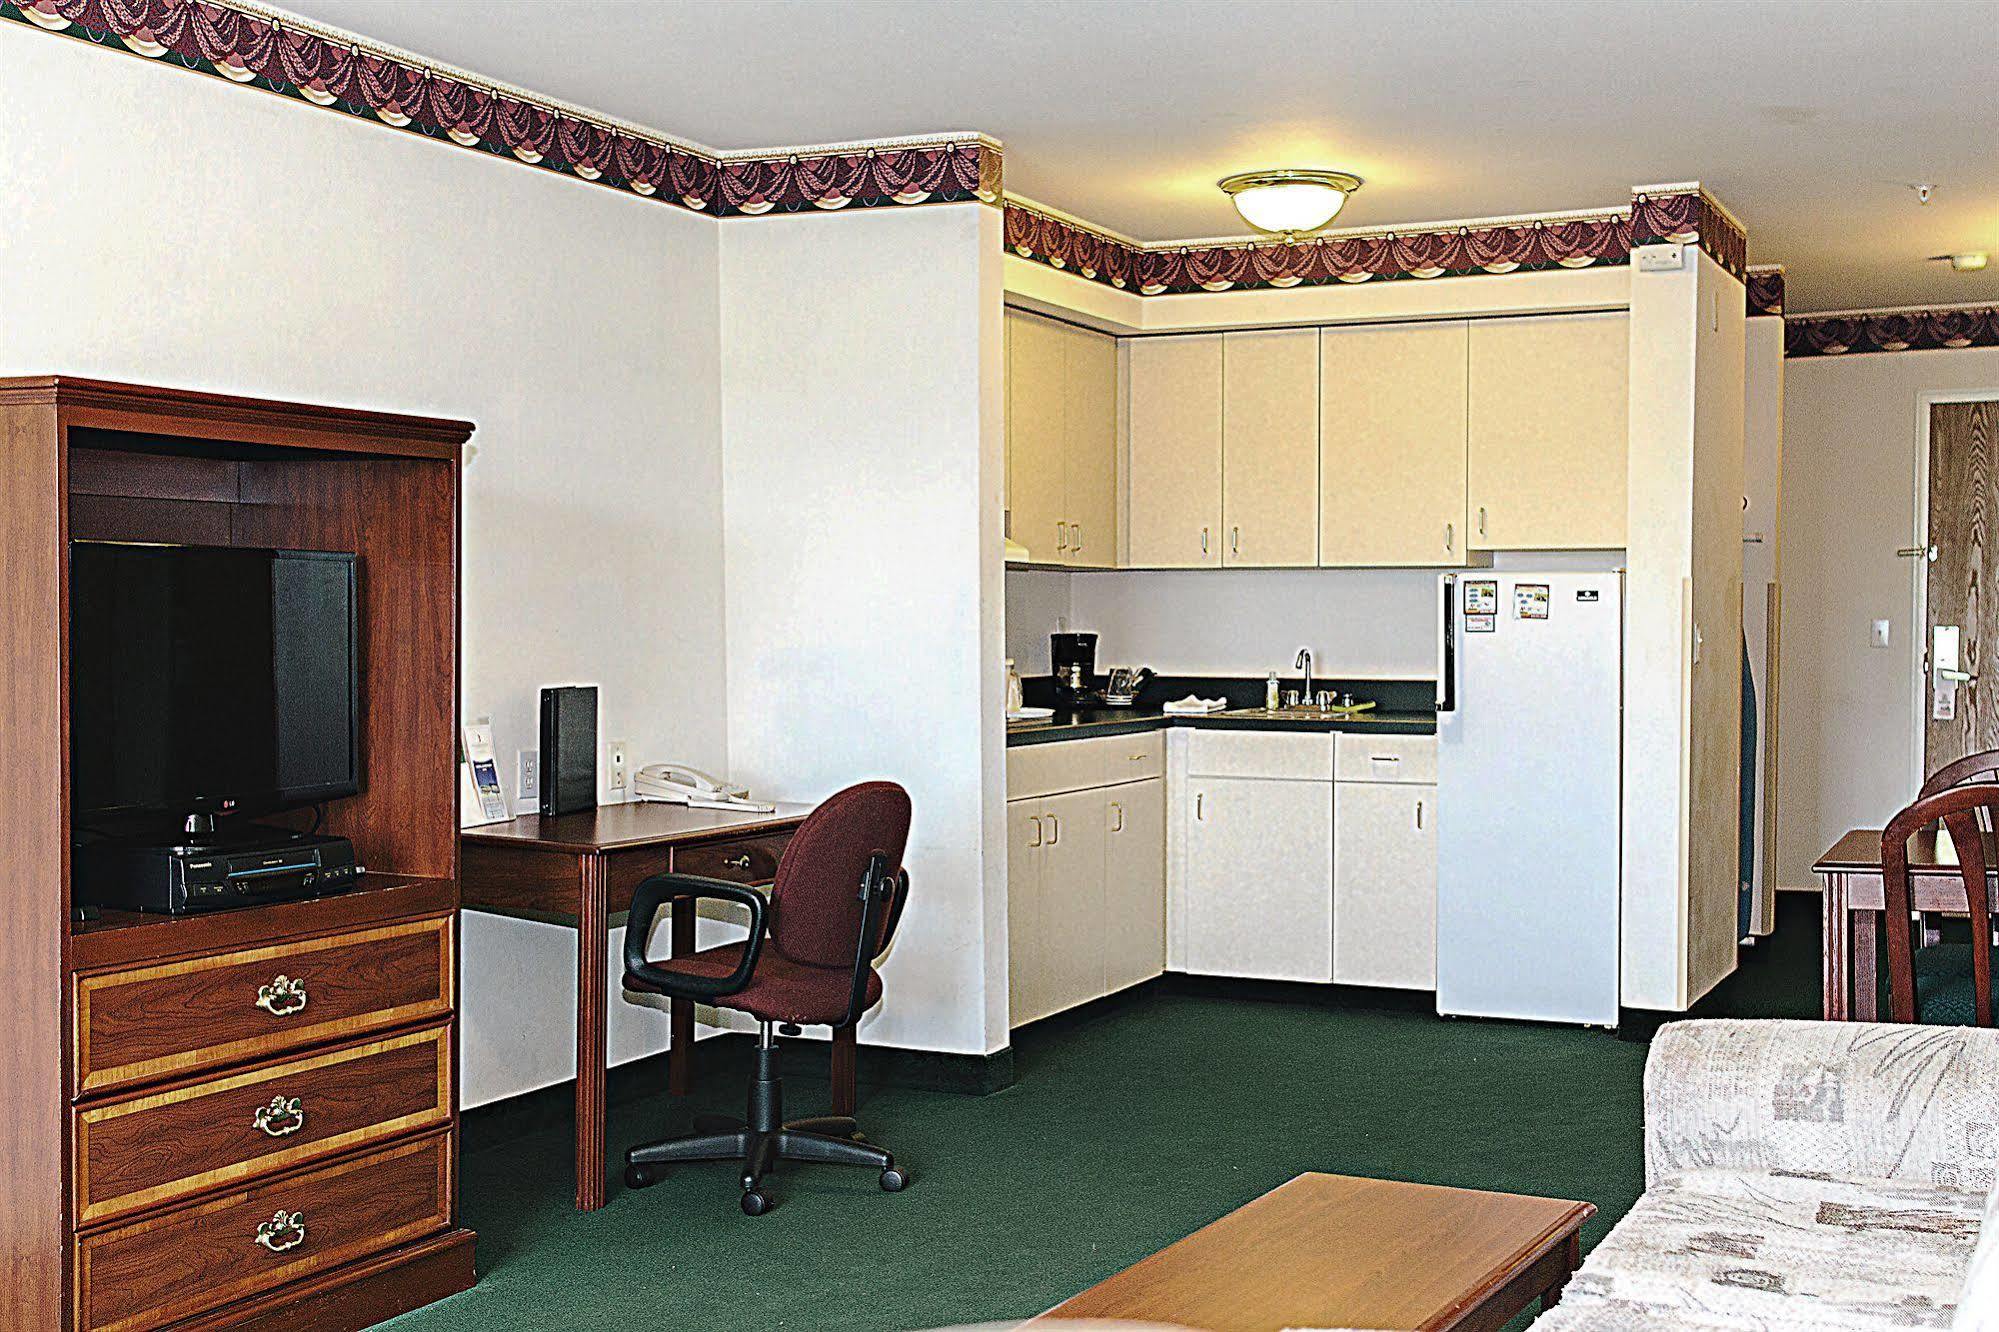 Fairbridge Inn & Suites Dupont Exterior foto